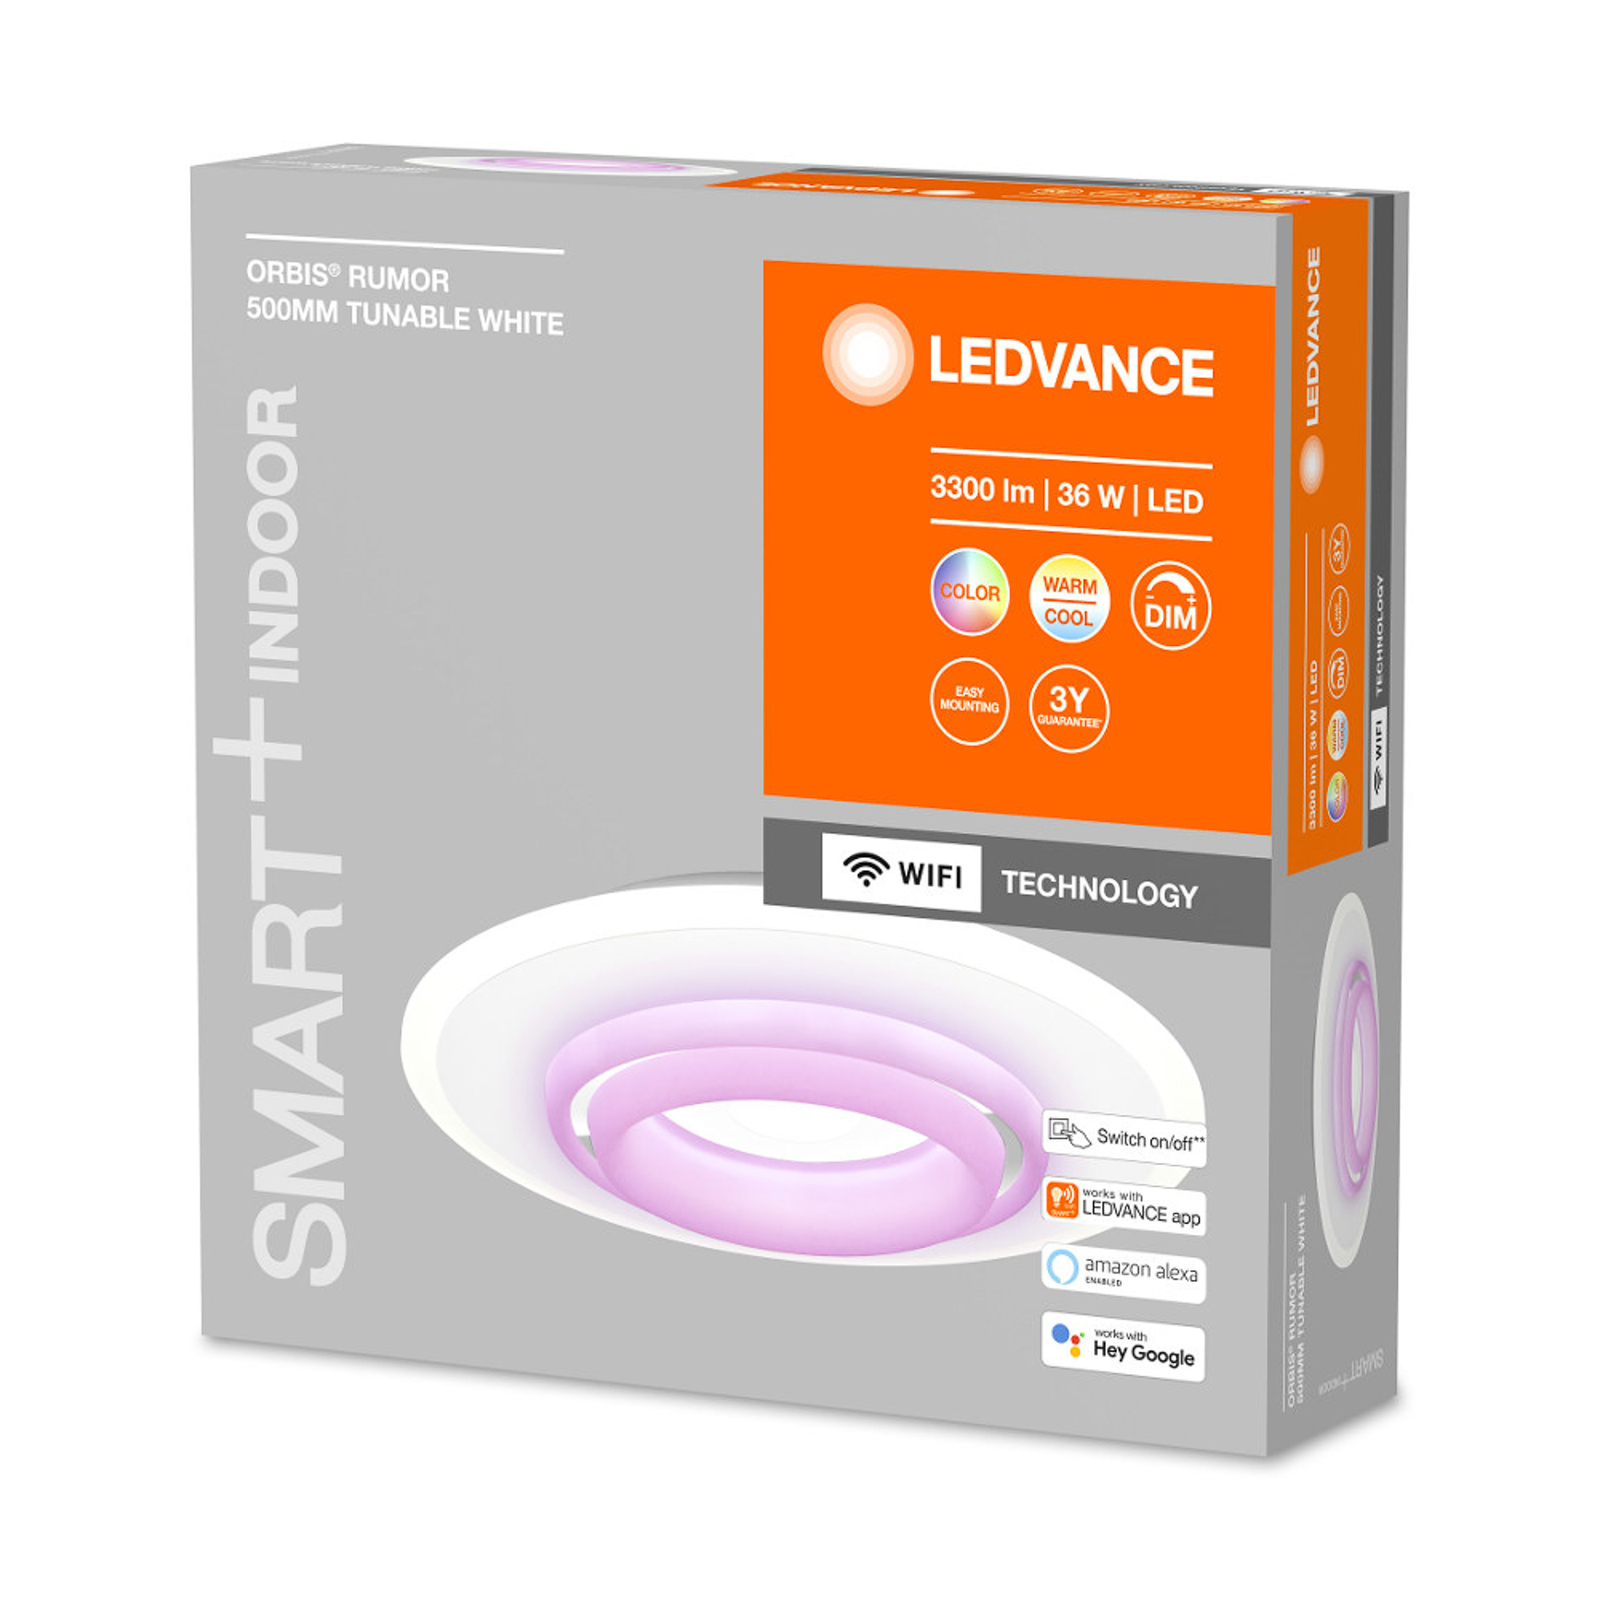 LEDVANCE SMART+ WiFi Orbis Rumor plafonnier LED